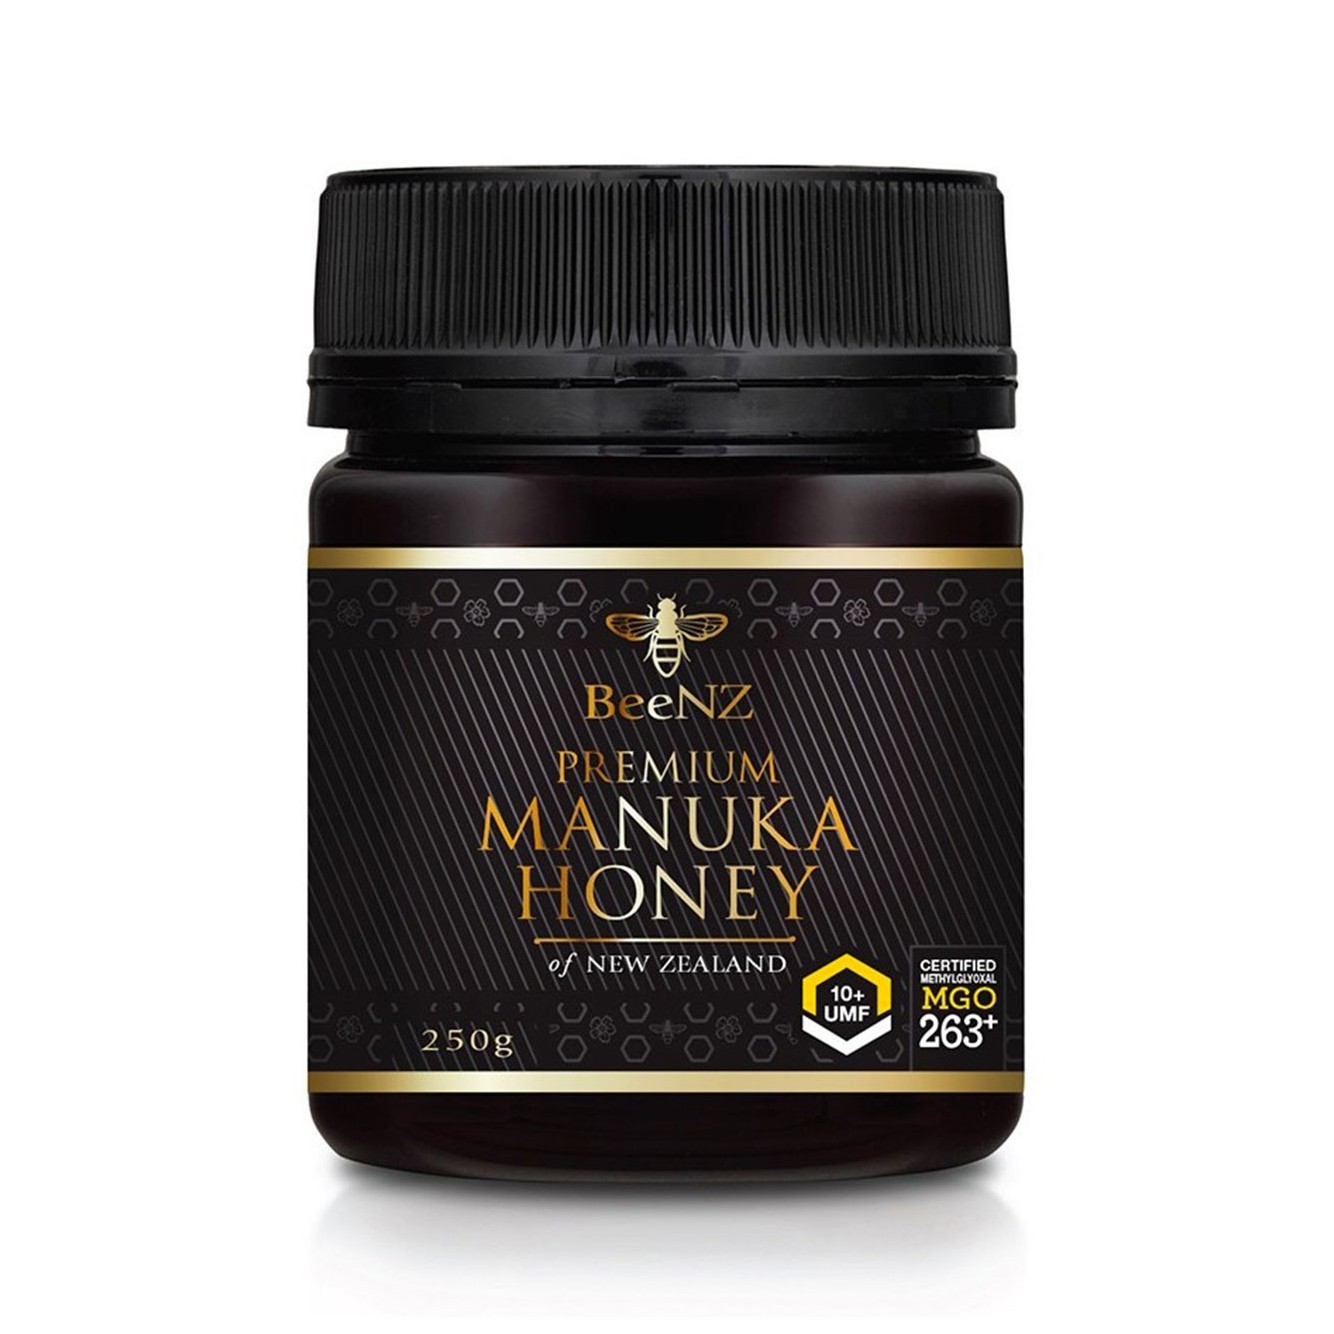 Miele di Manuka UMF10 certificato. Miele Antibatterico con proprietà benefiche.